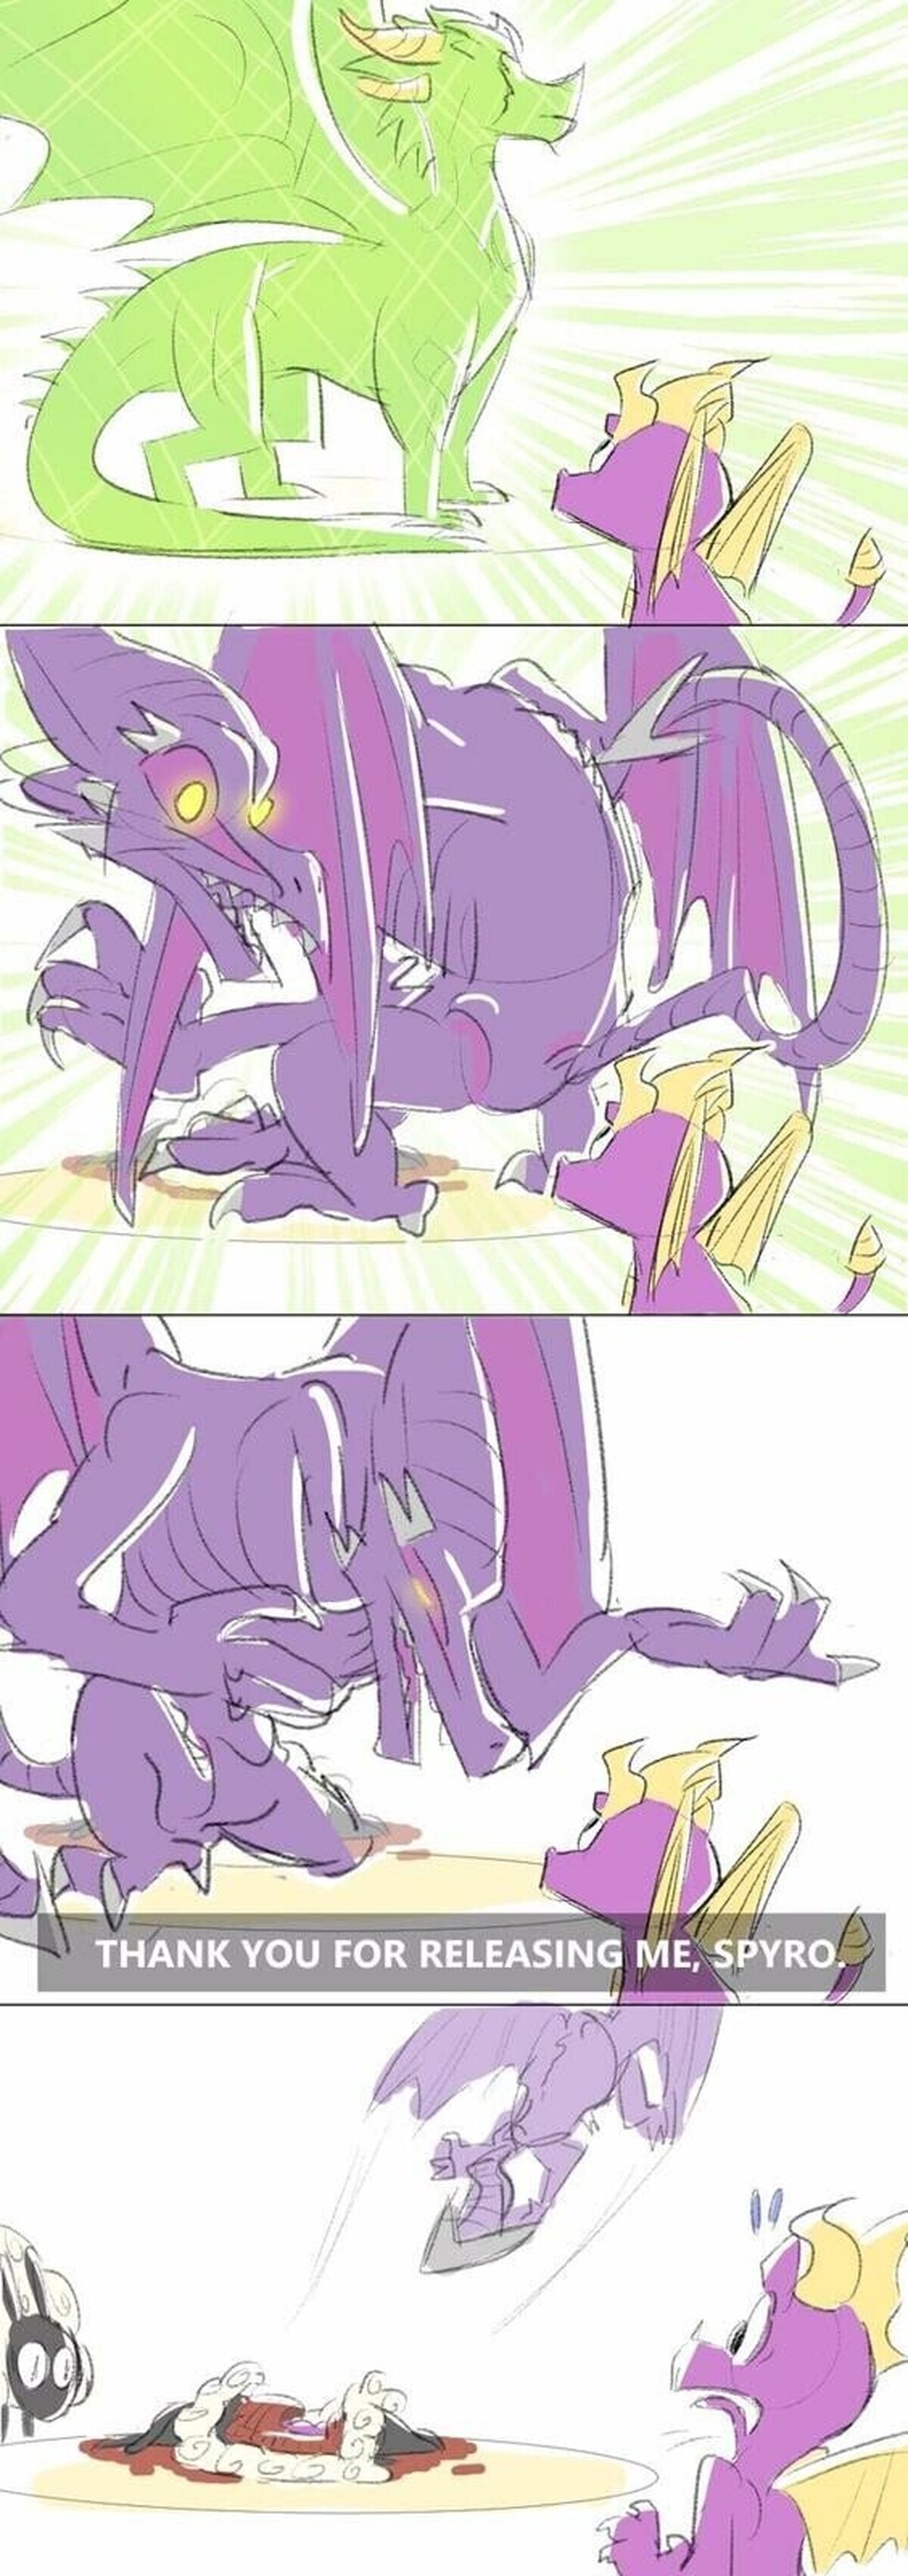 ¡Spyro idiota! por KarateManJoe